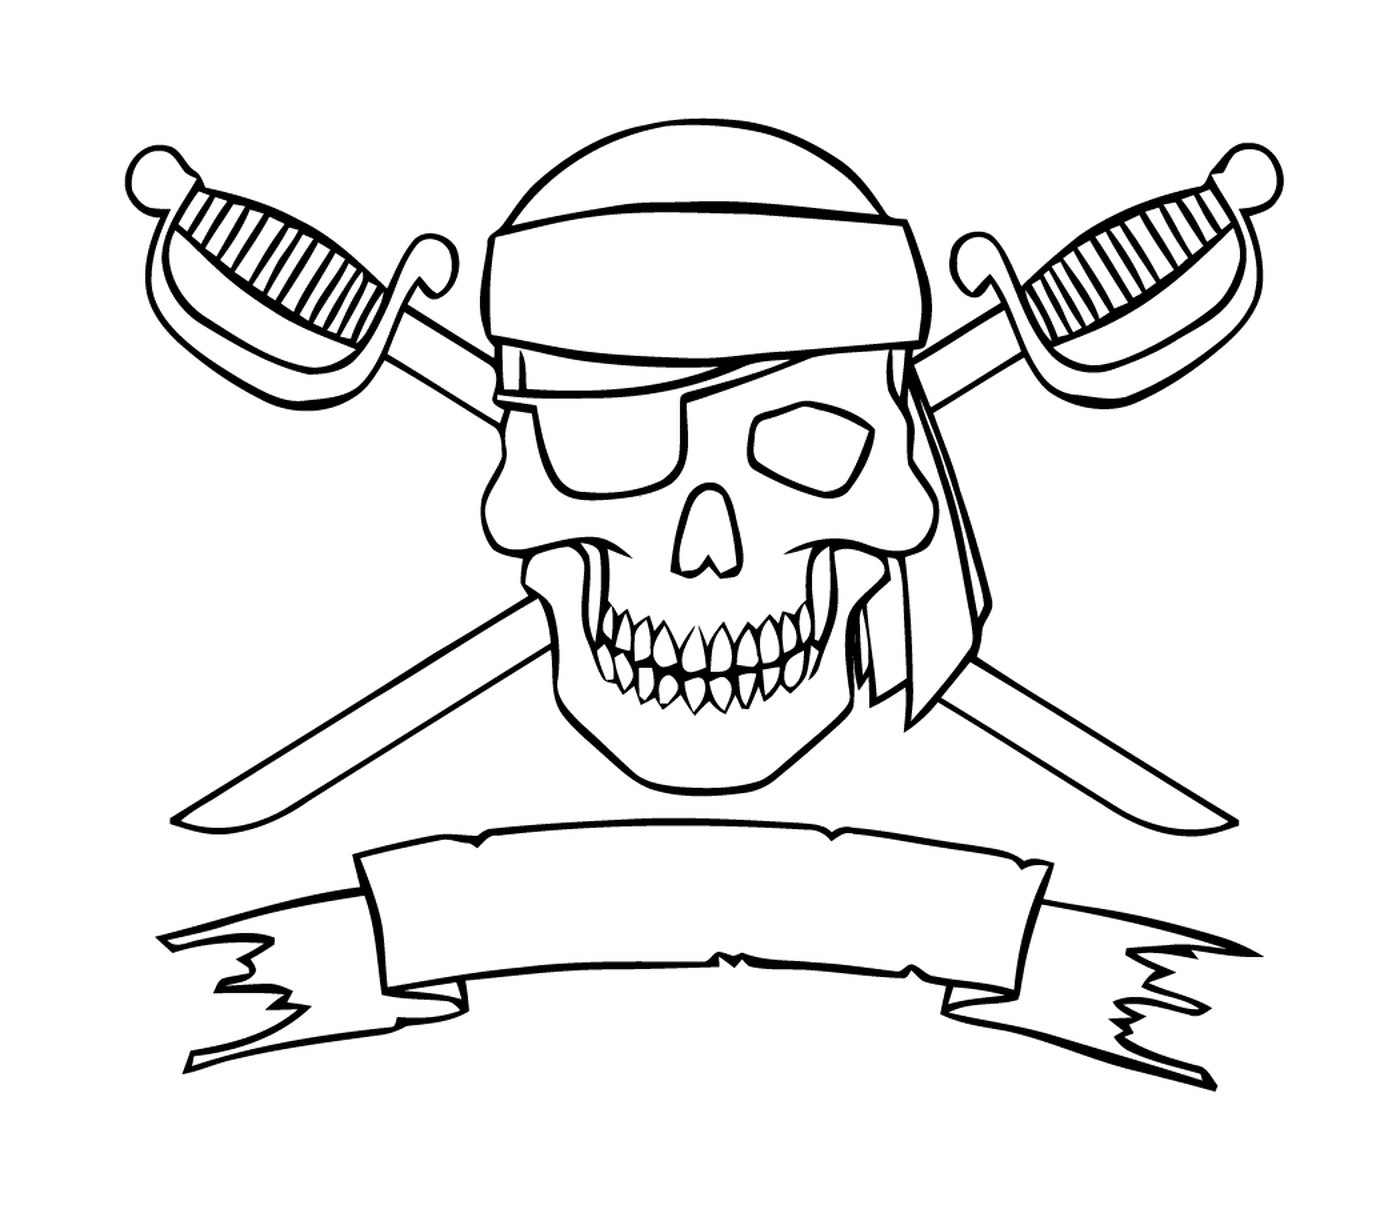  Logotipo pirata assustador, espadas cruzadas 